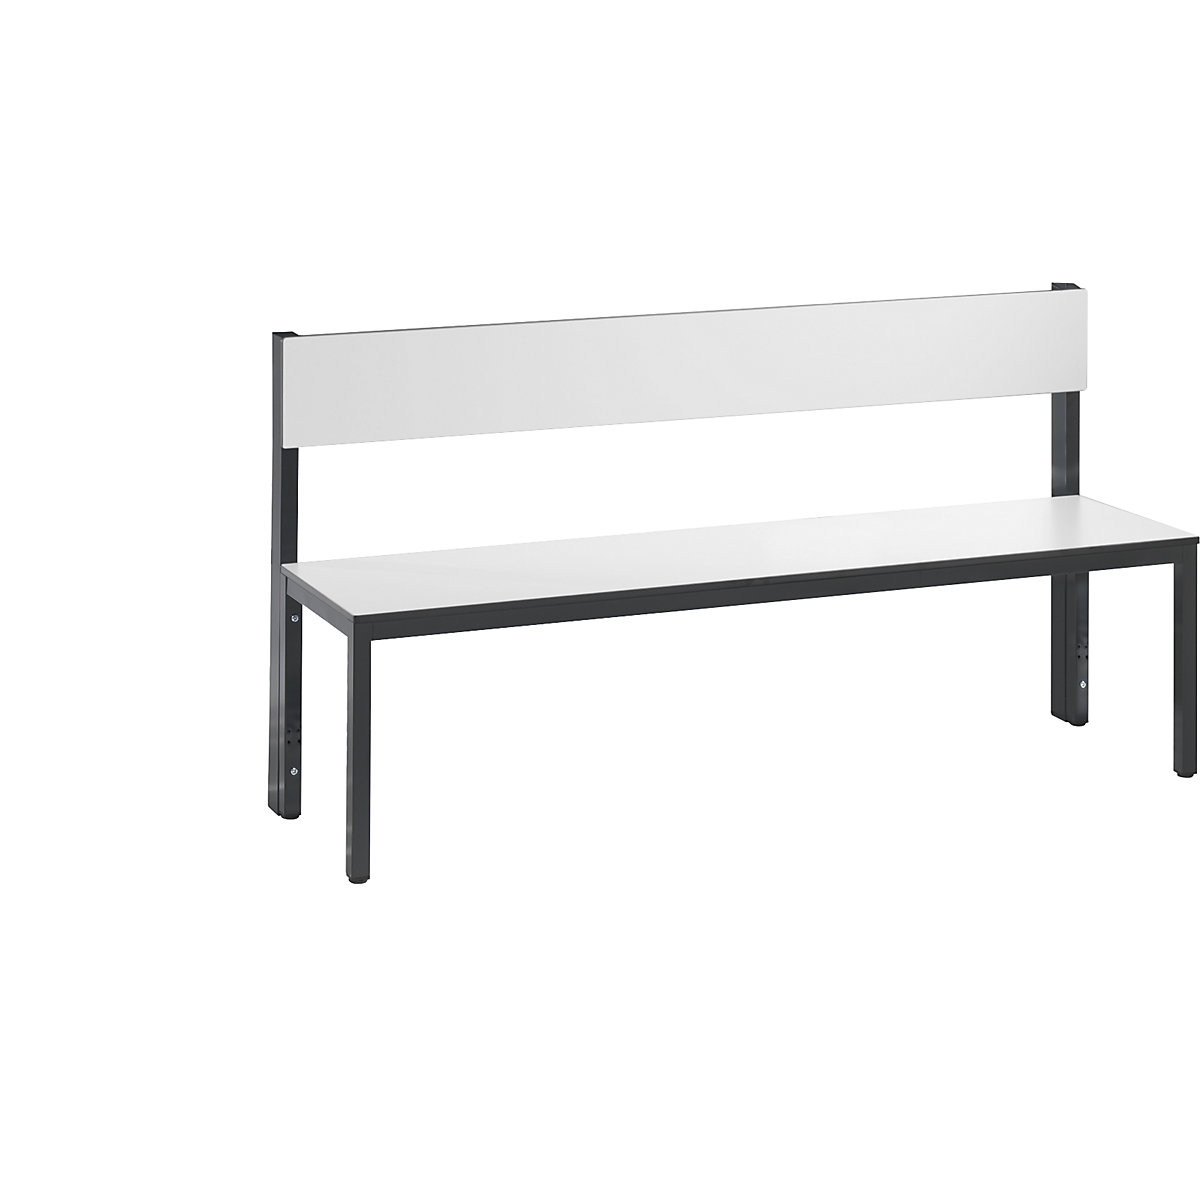 Ławka do szatni BASIC PLUS, jednostronna – C+P, powierzchnia do siedzenia z HPL, średniej wysokości, dł. 1500 mm, biała-1